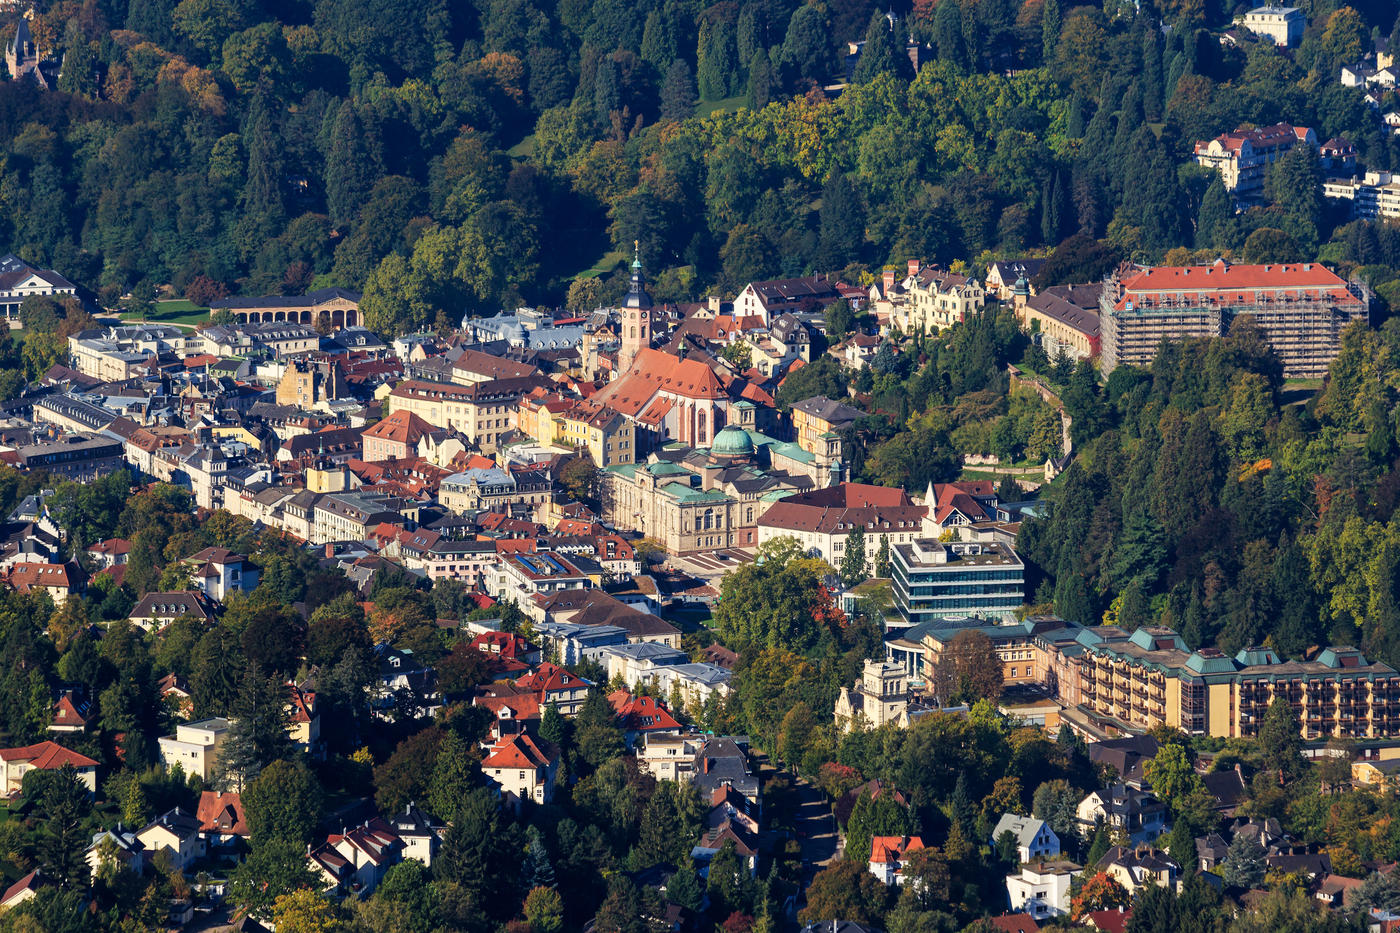 Baden-Baden: Eintauchen in pure Eleganz